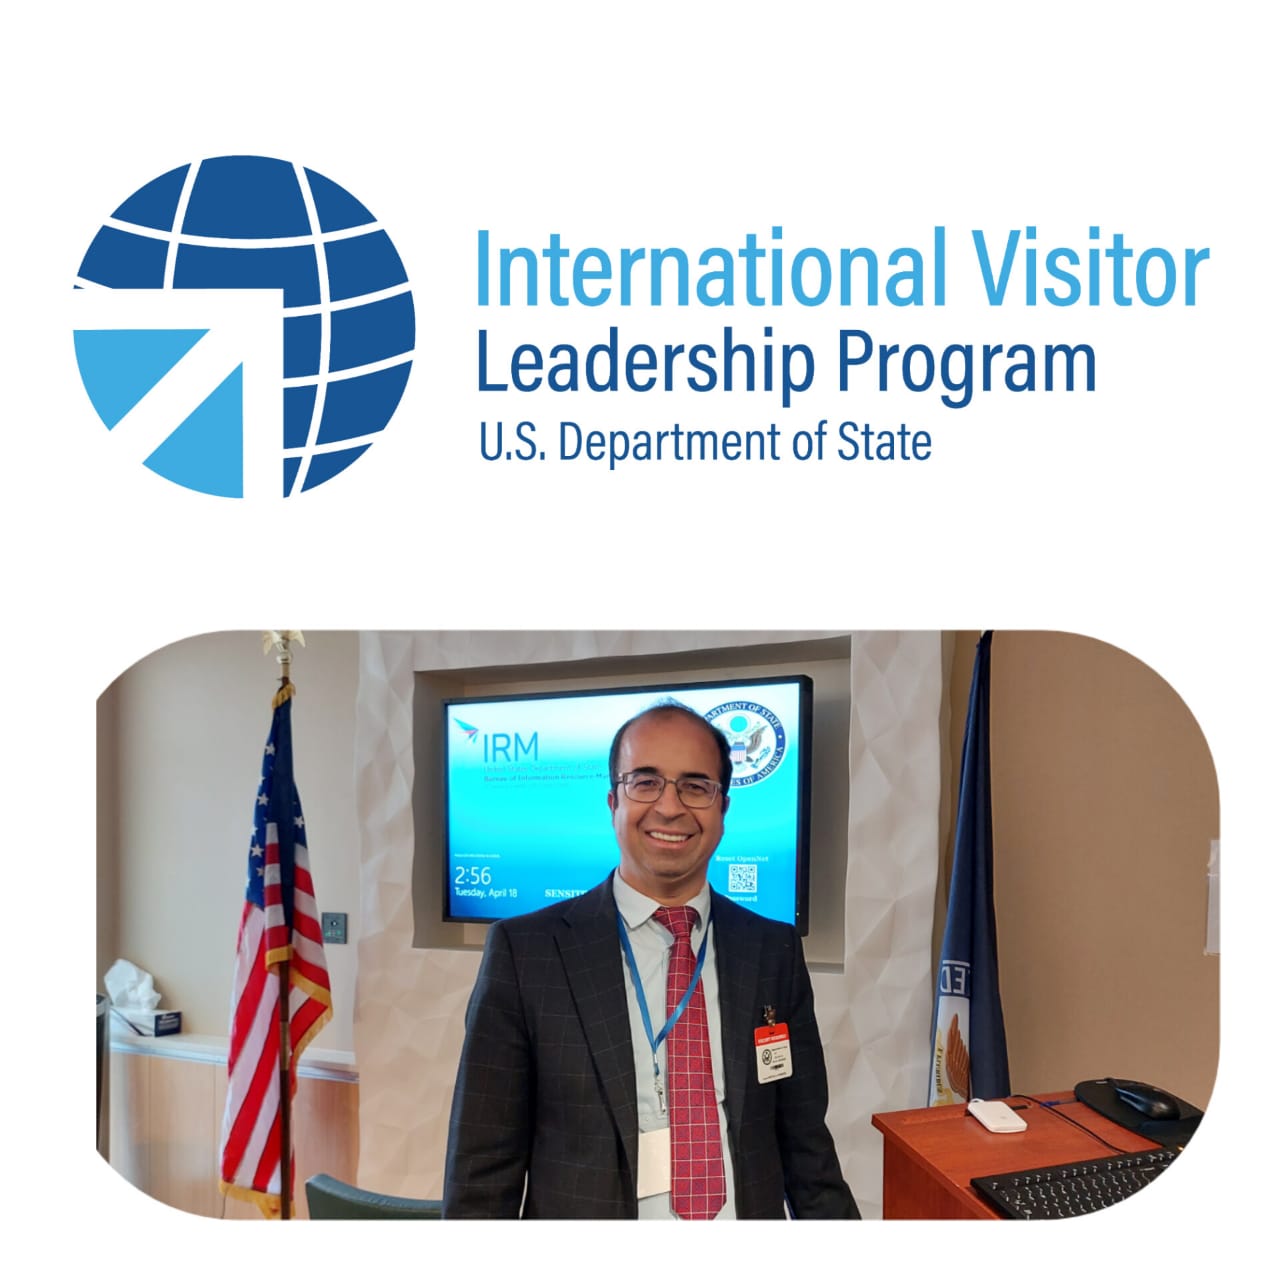 الحجاج مساعيد النائب الثاني لرئيسة جماعة ابن جرير بالولايات المتحدة الأمريكية في إطار برنامج الزائر الدولي القيادي (IVLP)International Visitor Leadership Program